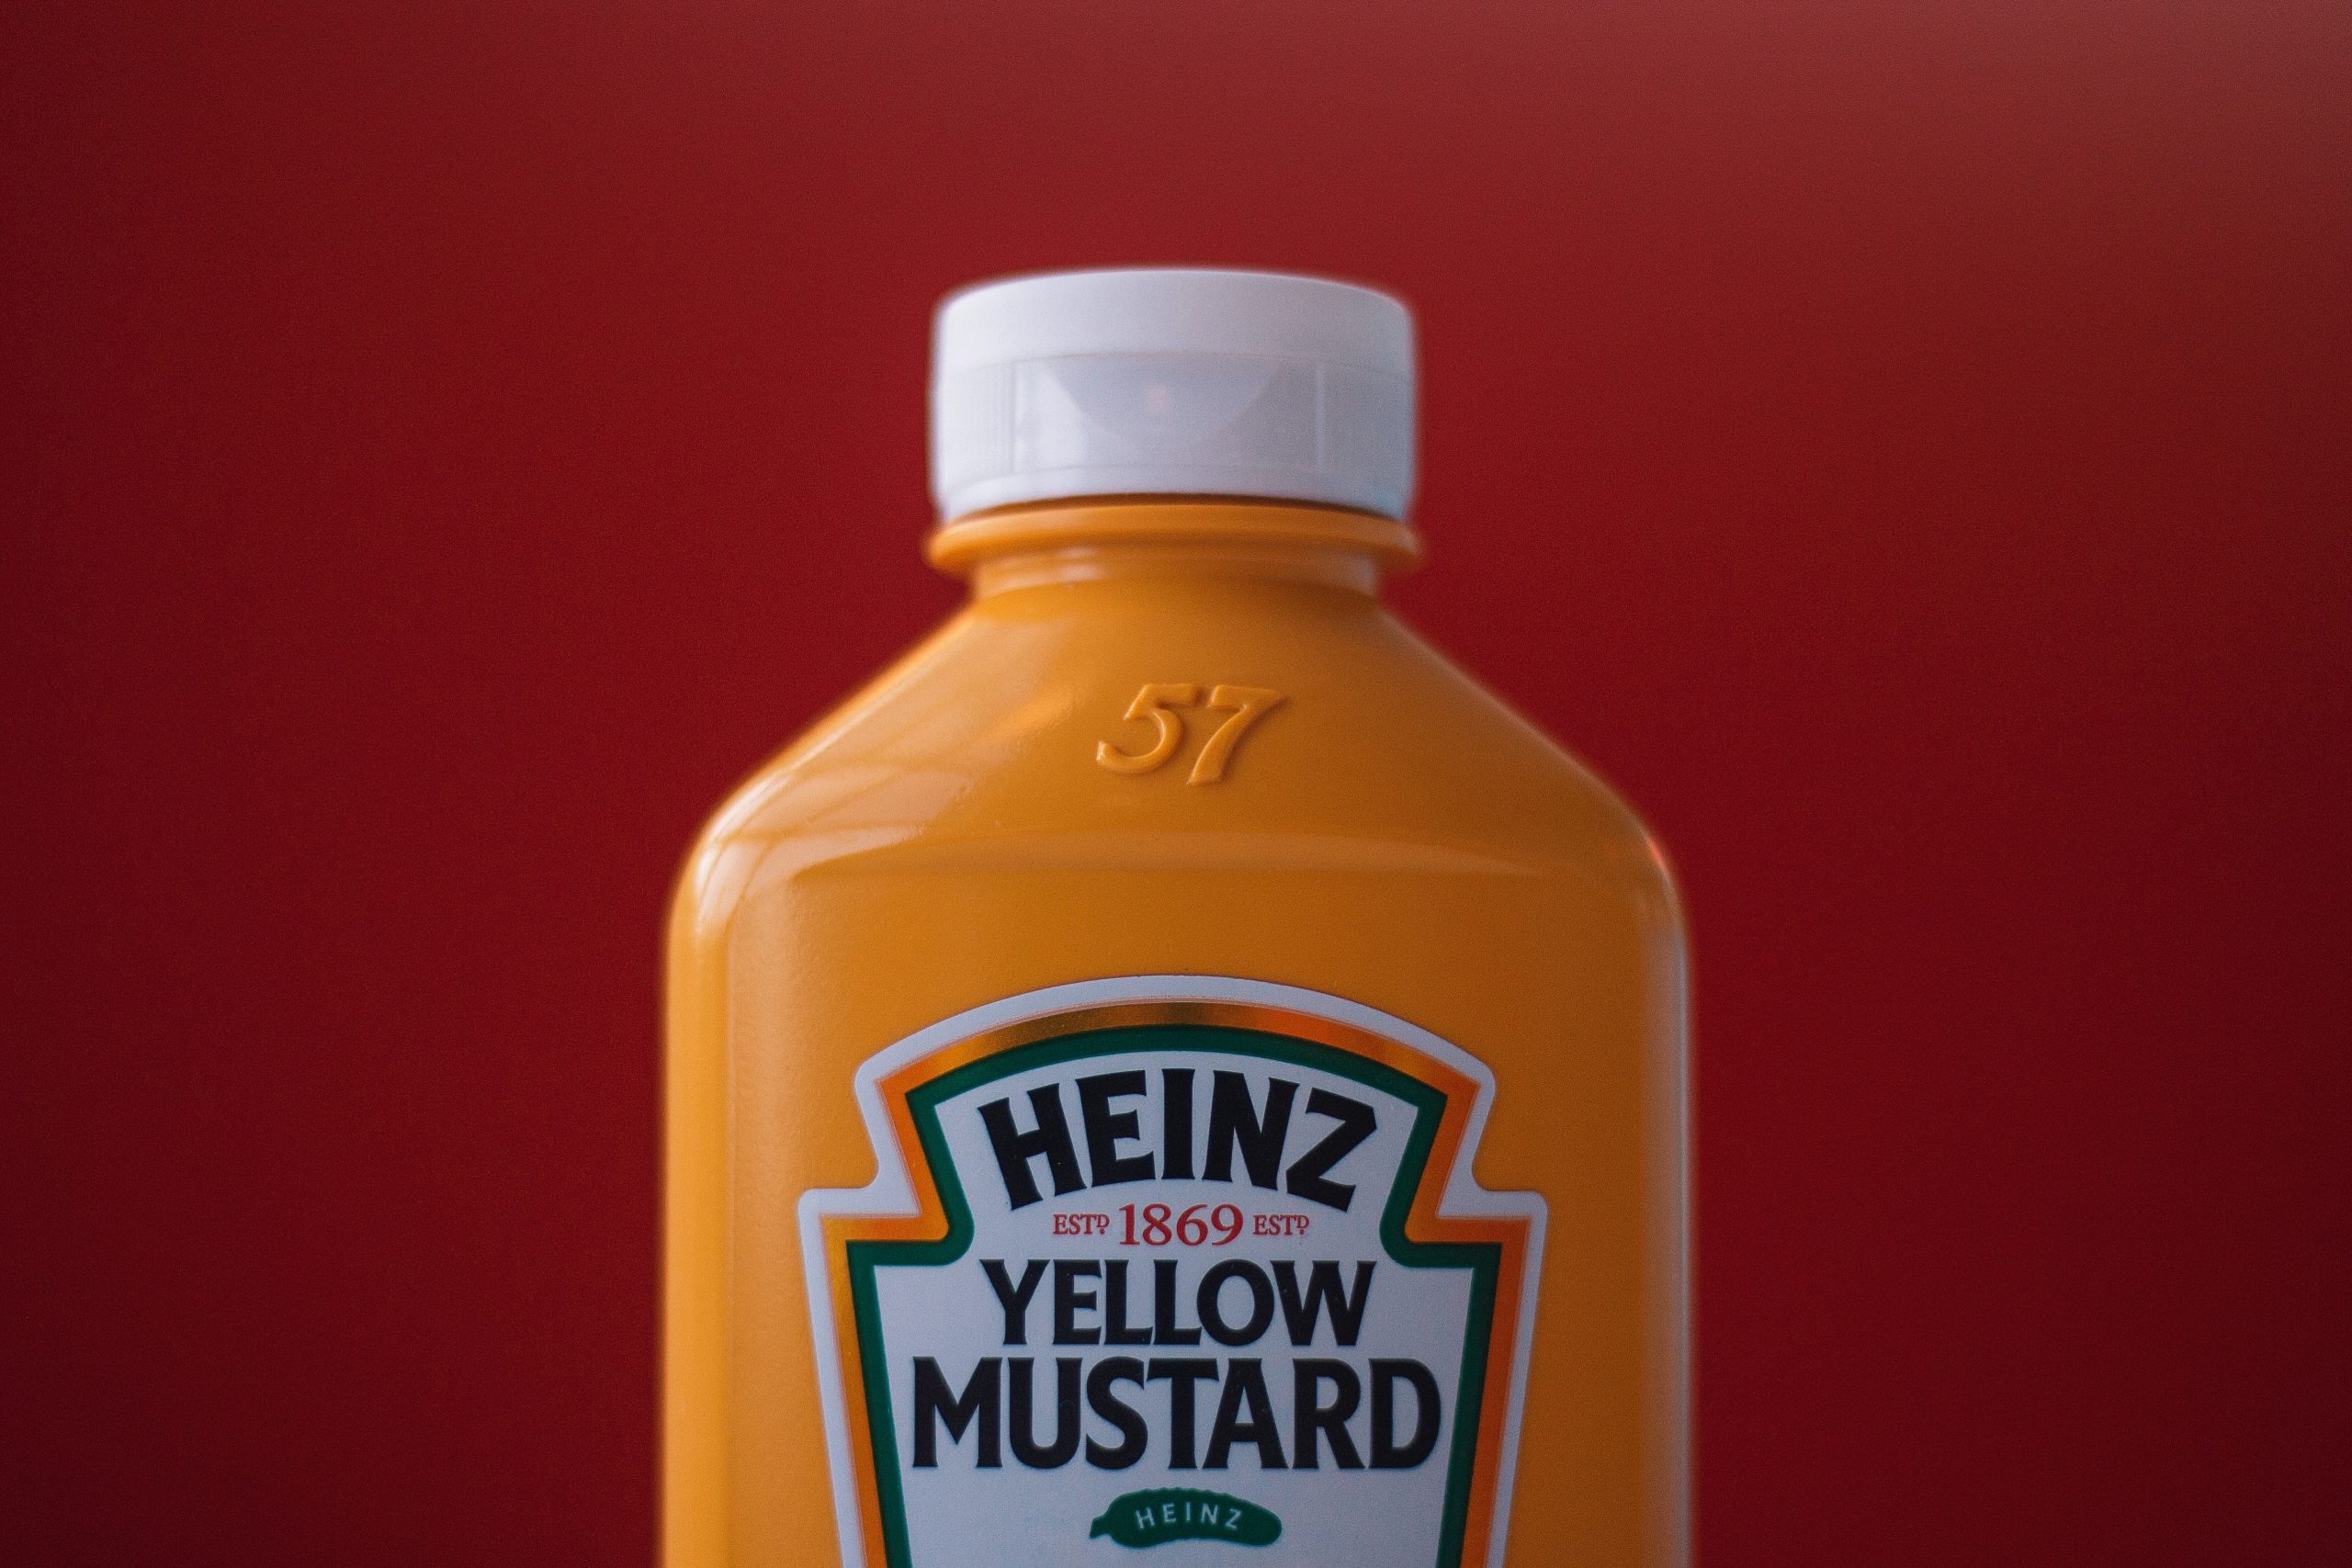 La historia de Heinz